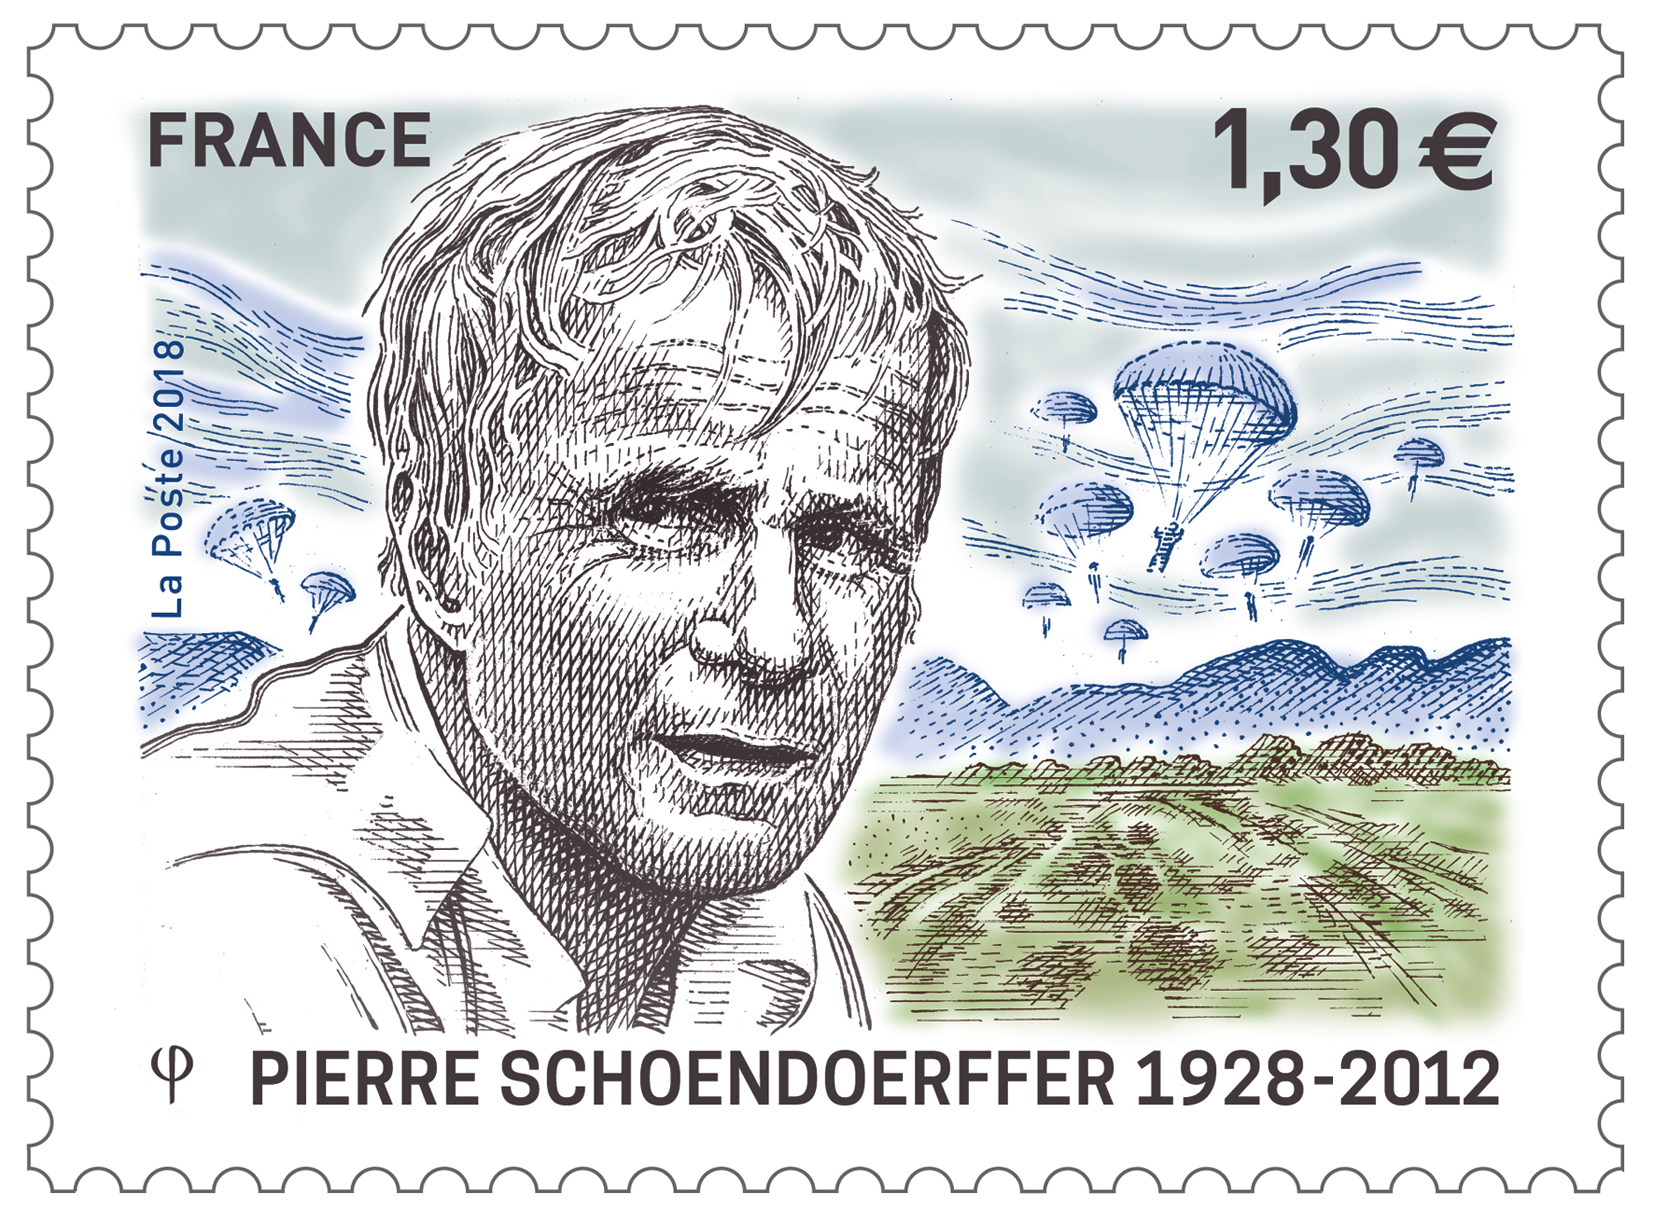 Pierre Schoendoerffer 1928 - 2012